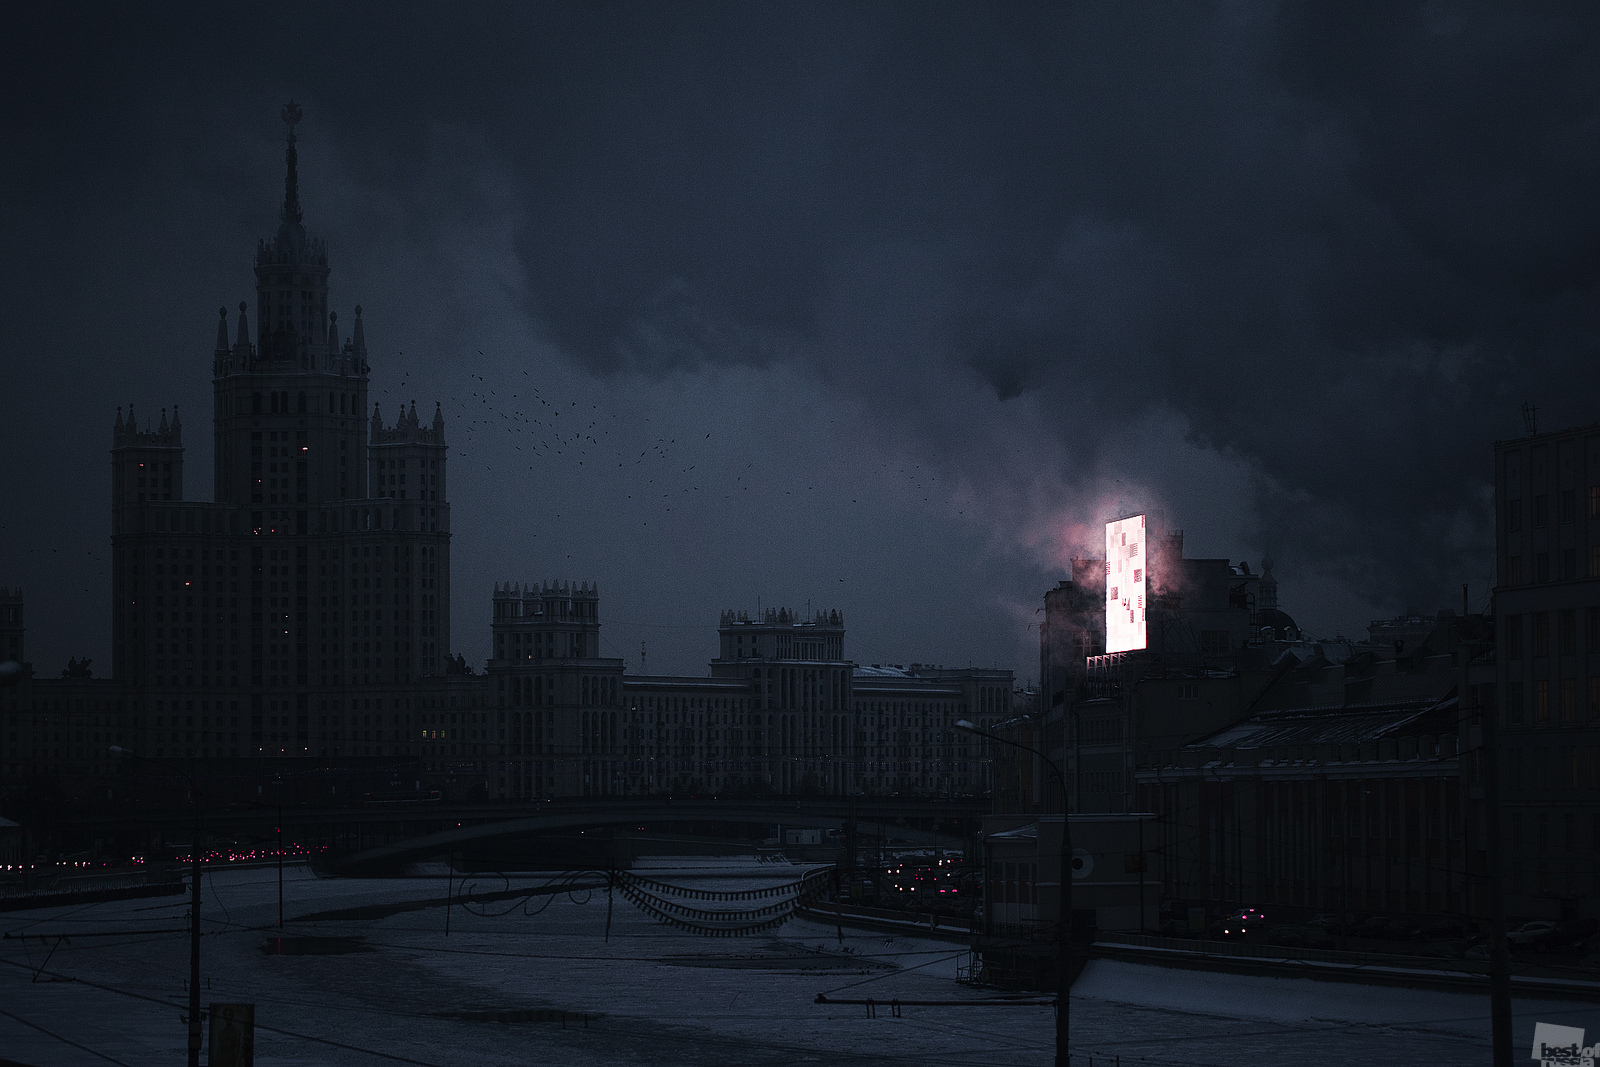 あるいは最も憂鬱なおとぎ話のお城に見えることもある // モスクワの「モルドール」。 この写真は、モスクワ中心部の街灯が点灯される直前の夕刻に撮影された。